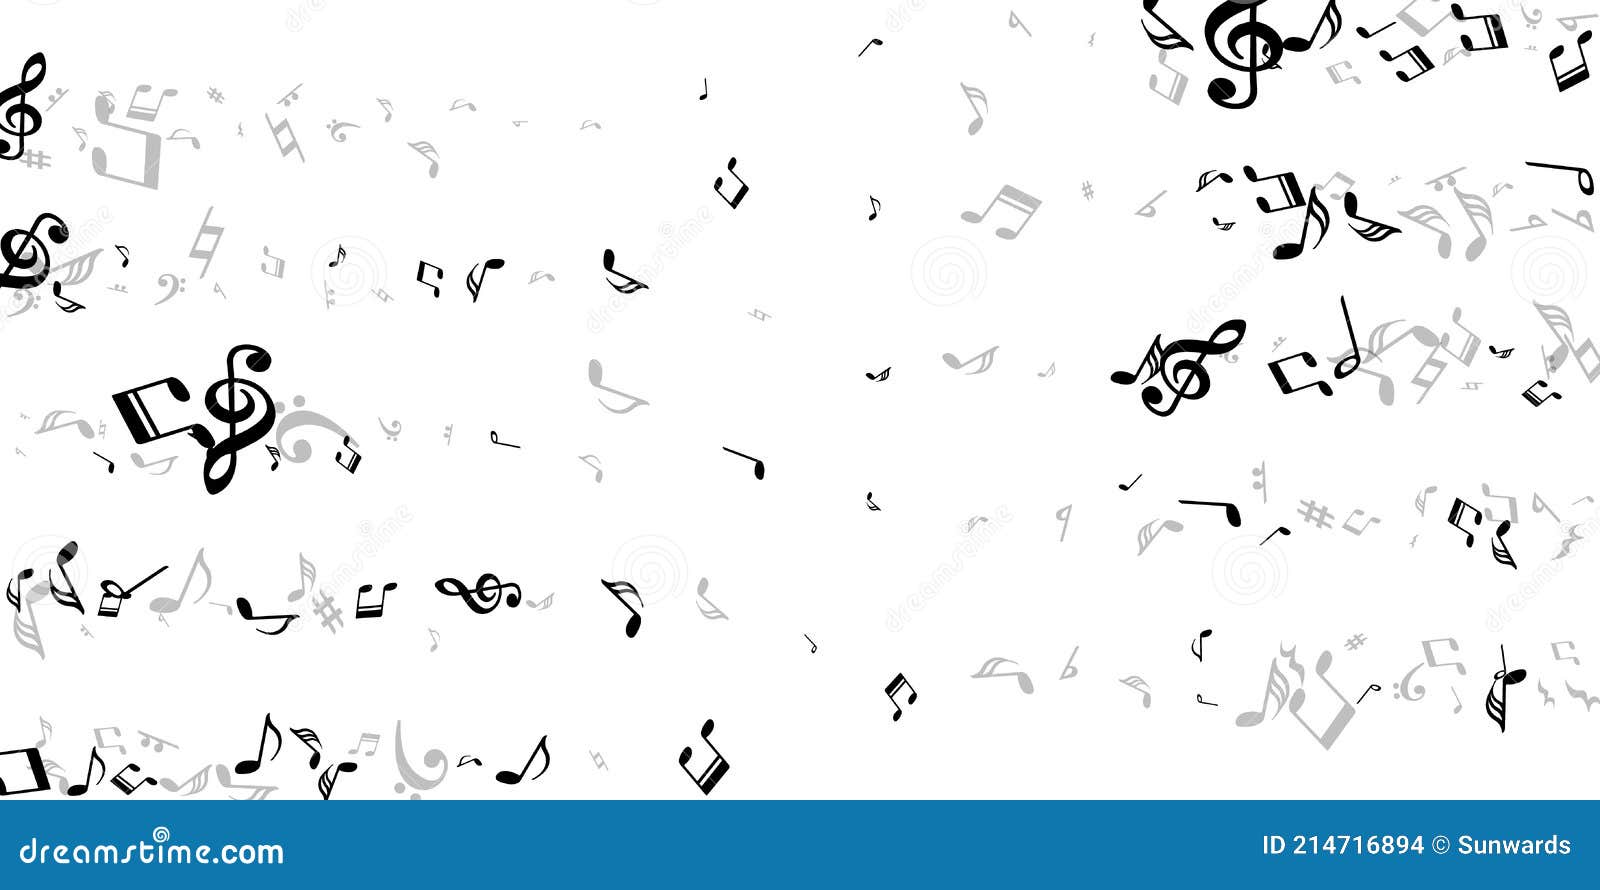 音乐音符符号矢量图 宋符号向量例证 插画包括有标记 构成 关键字 和谐 记数法 图象